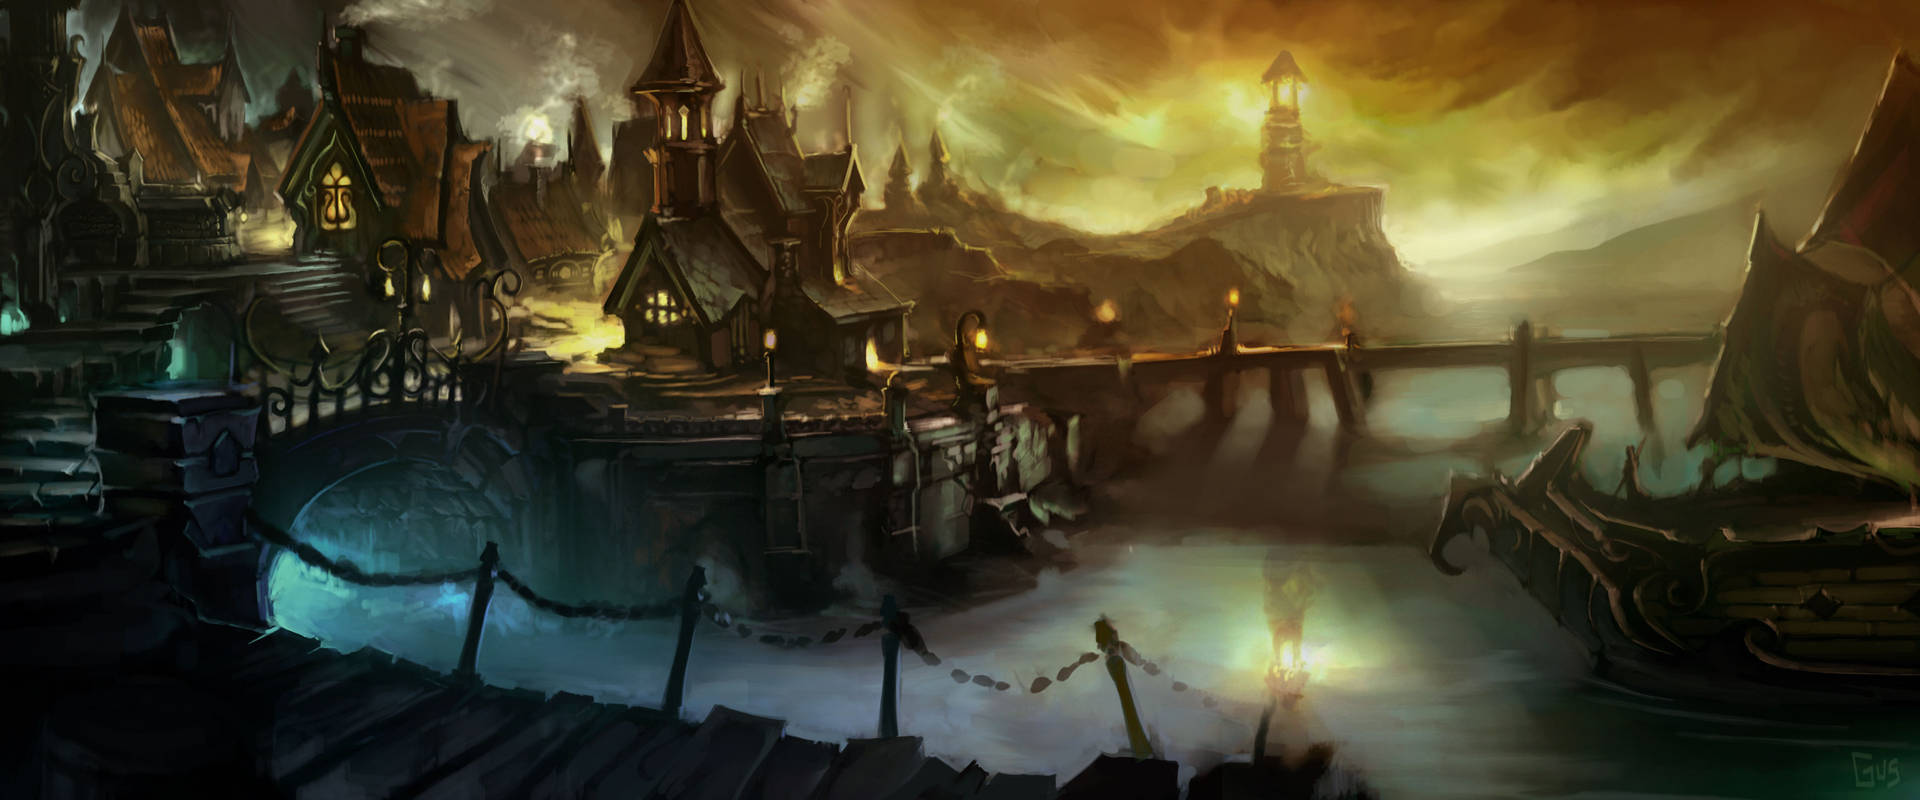 Weltvon Warcraft Wallpaper